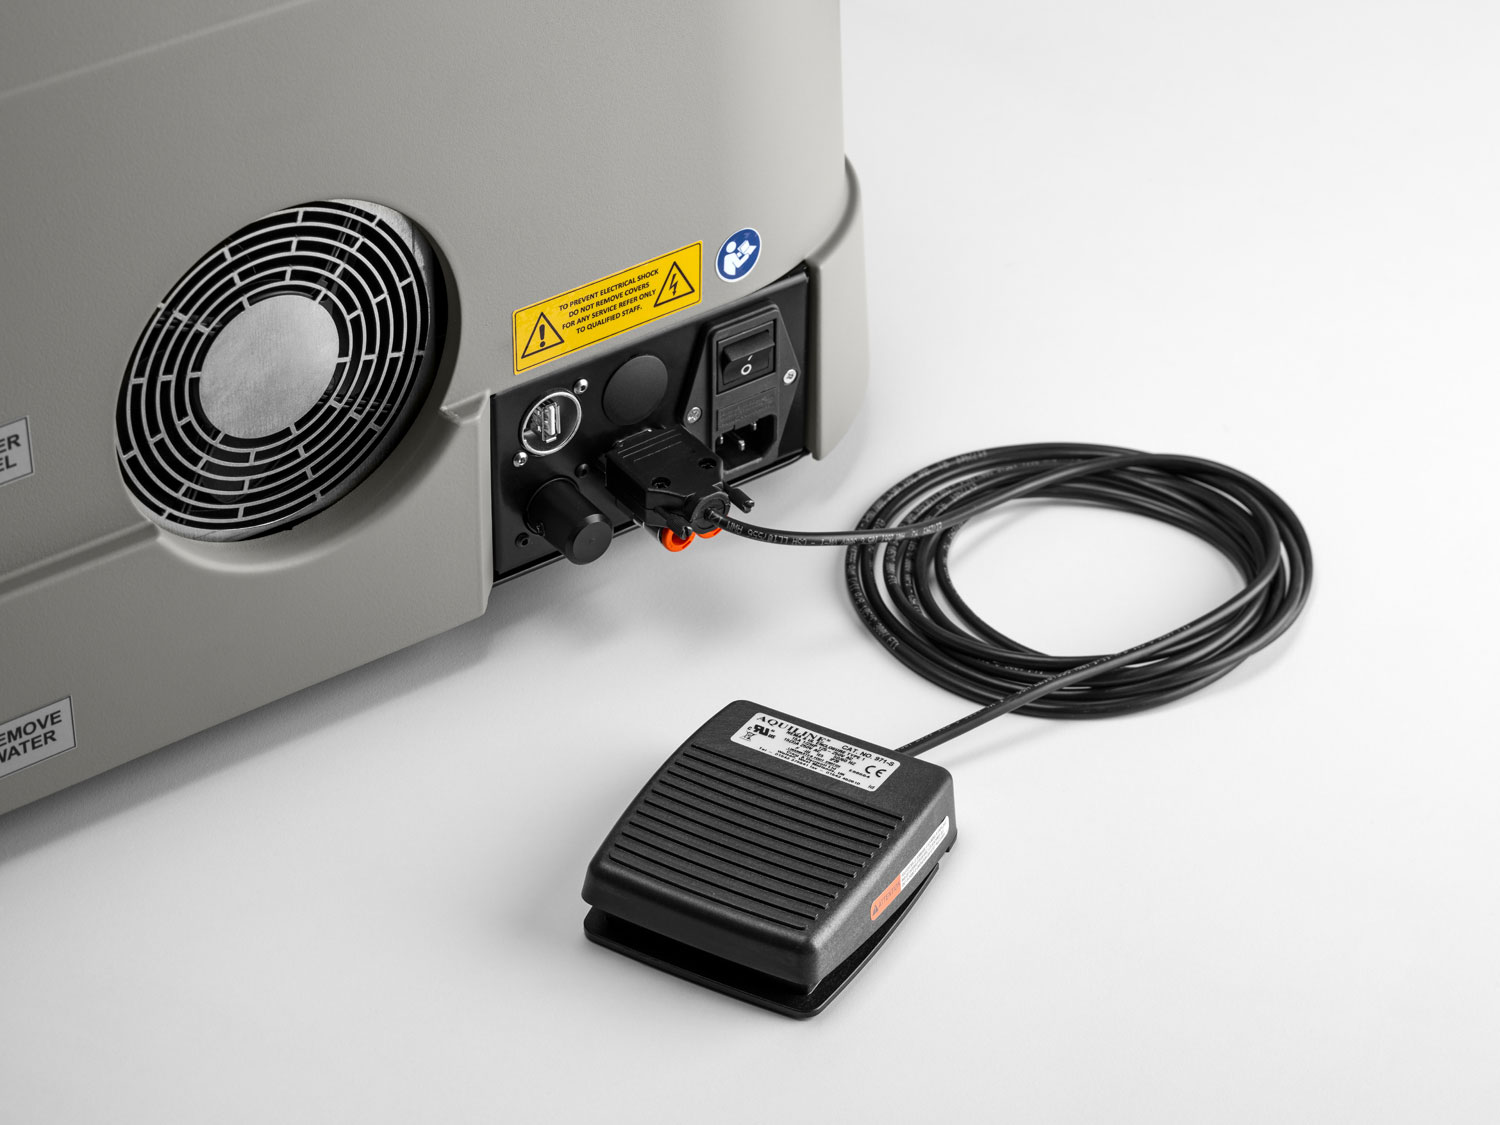 Kompakt-Schweißlaser Master 4.0 PLUS mit Stereo-Mikroskop und Smooth Spot